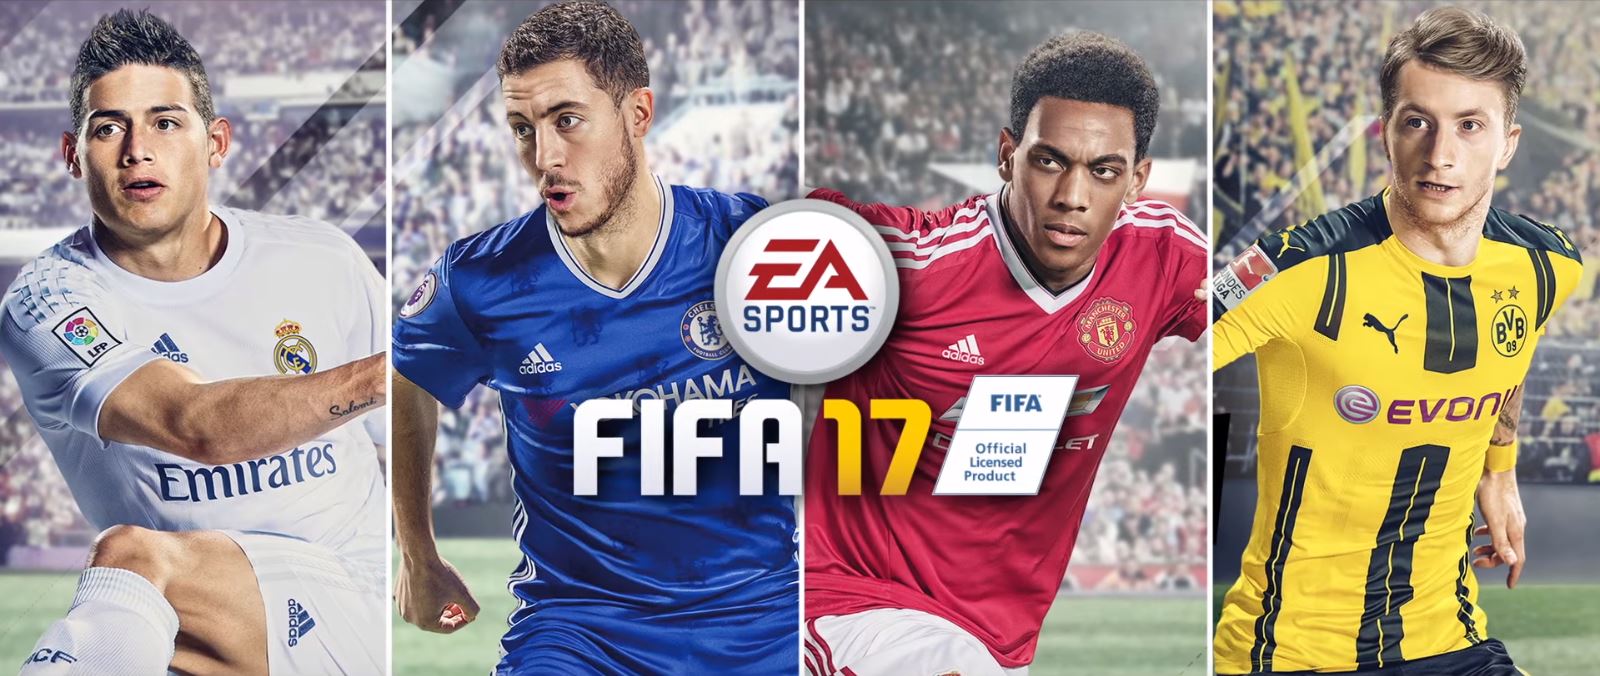 FIFA 17 - трейлер и главные новшества игры - фото 5